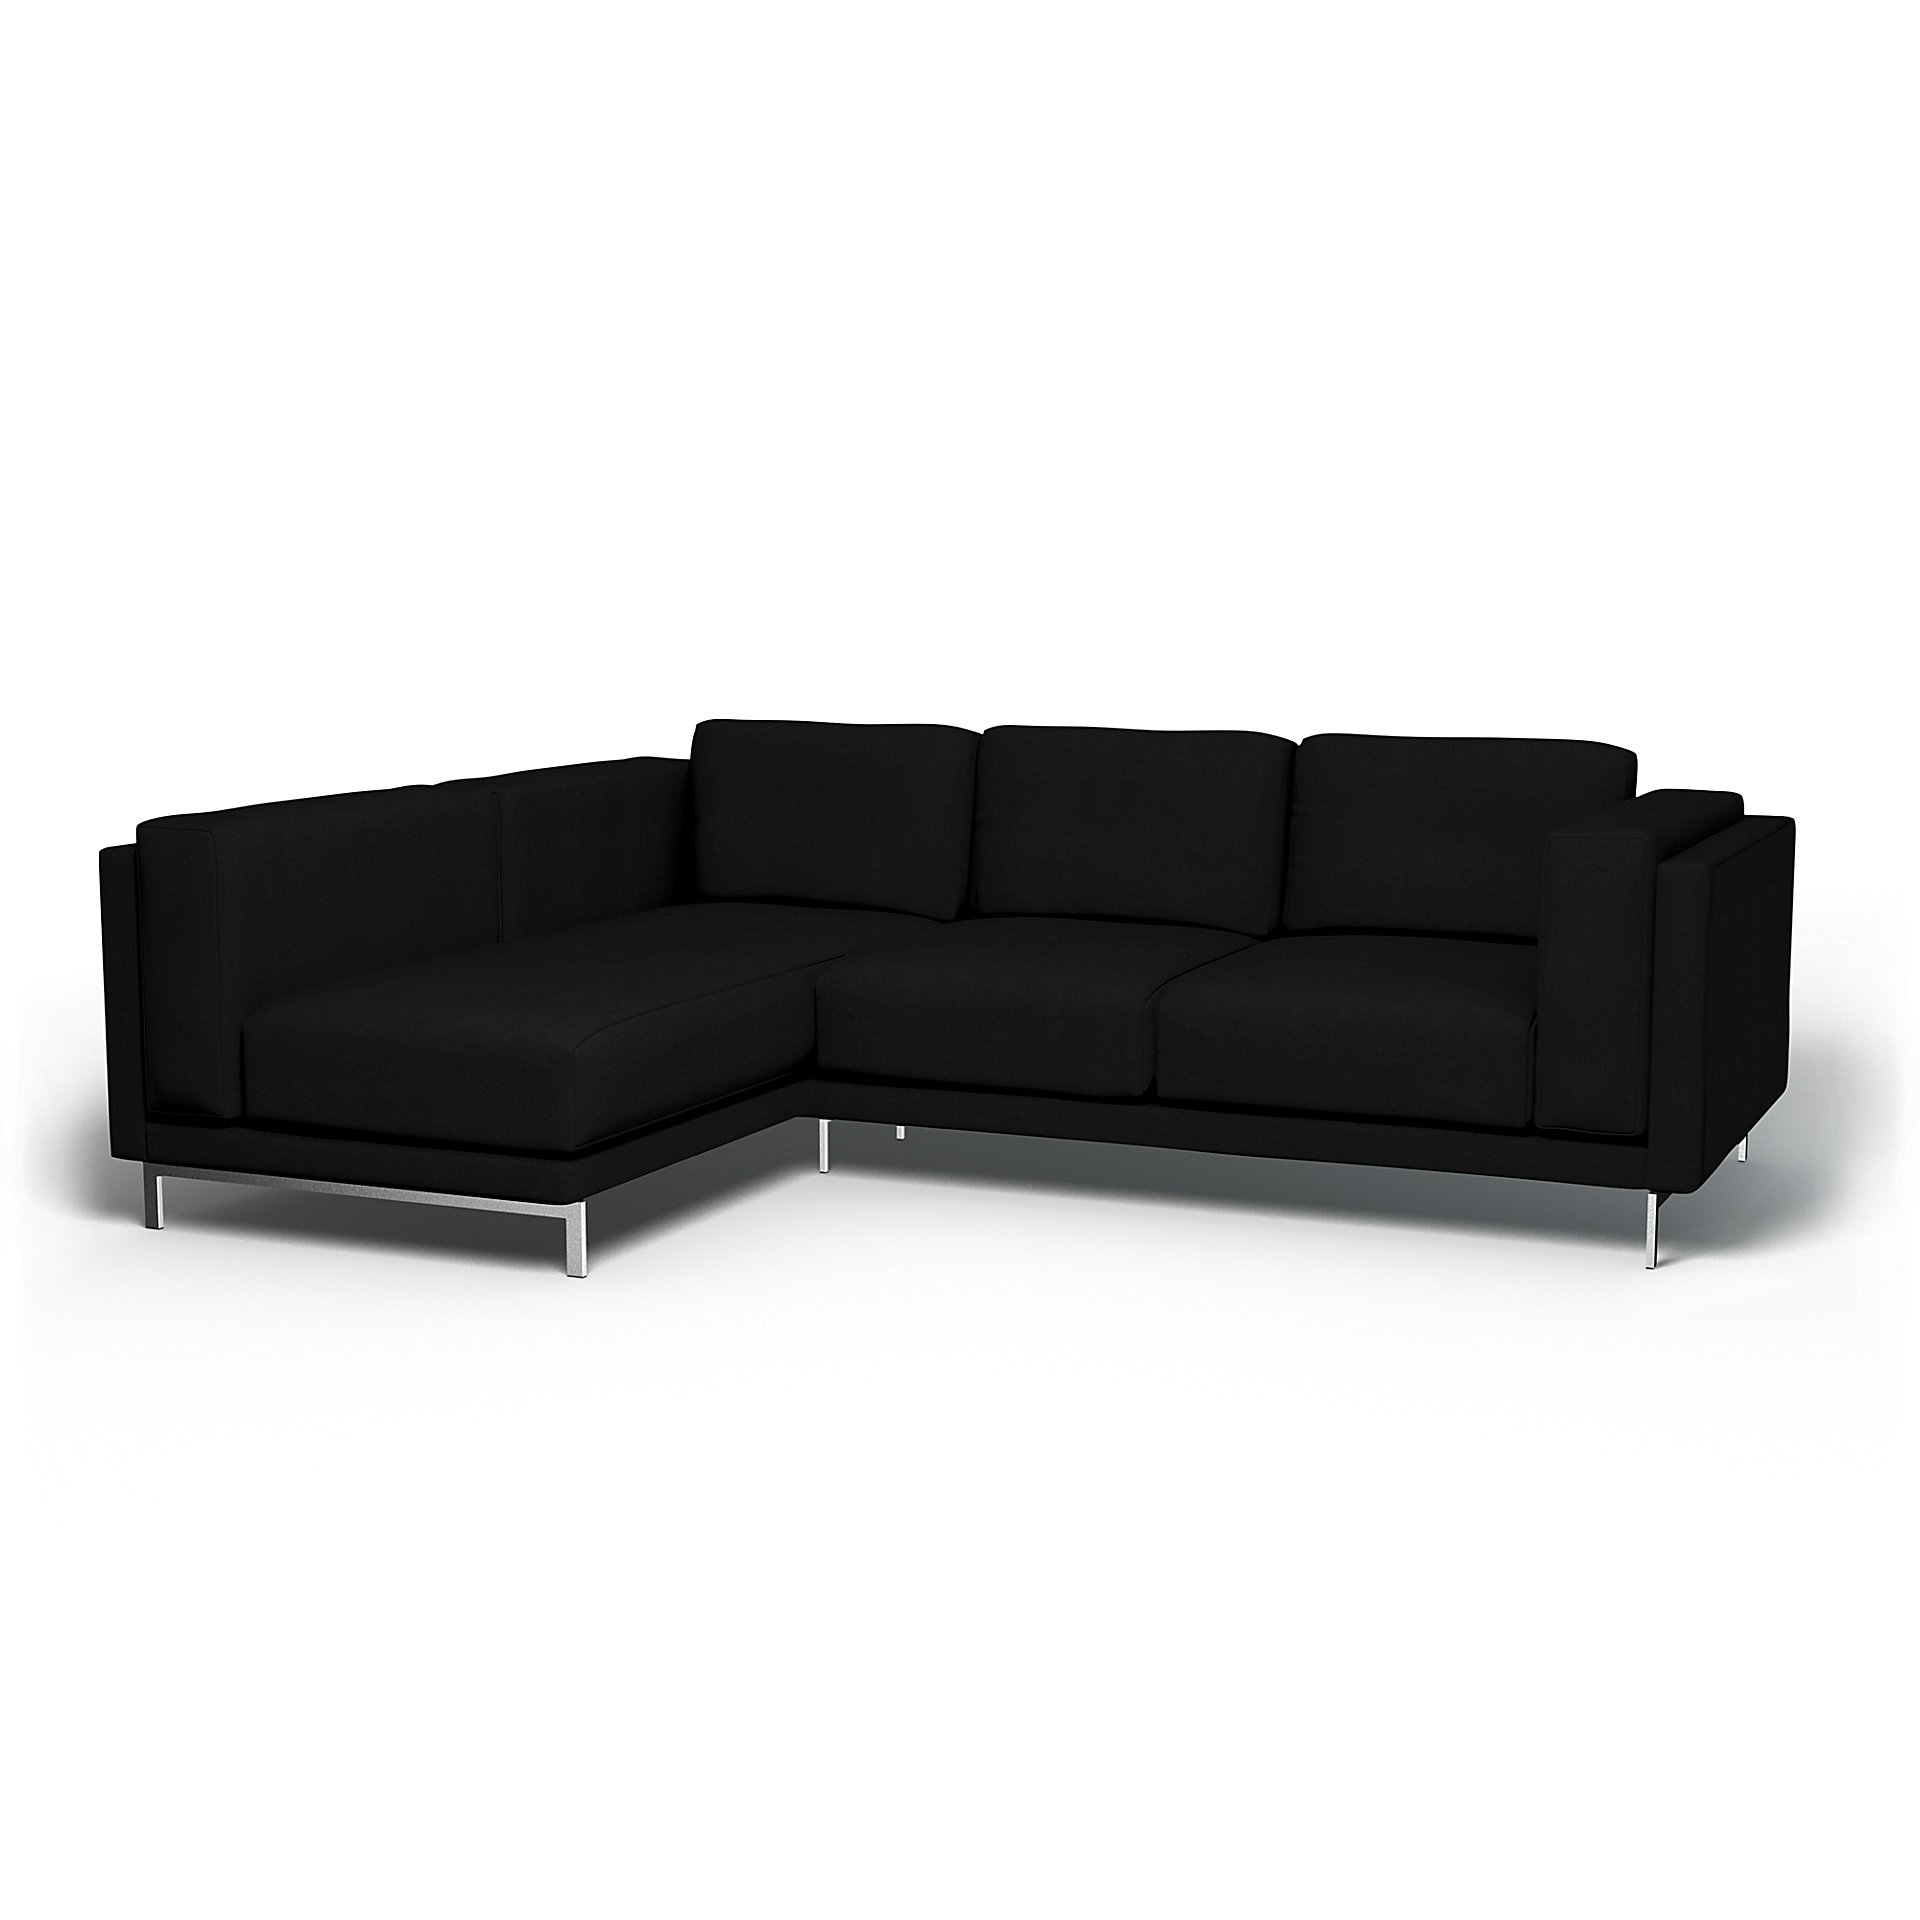 IKEA - Nockeby 3 Seater Sofa with Left Chaise Cover, Black, Velvet - Bemz